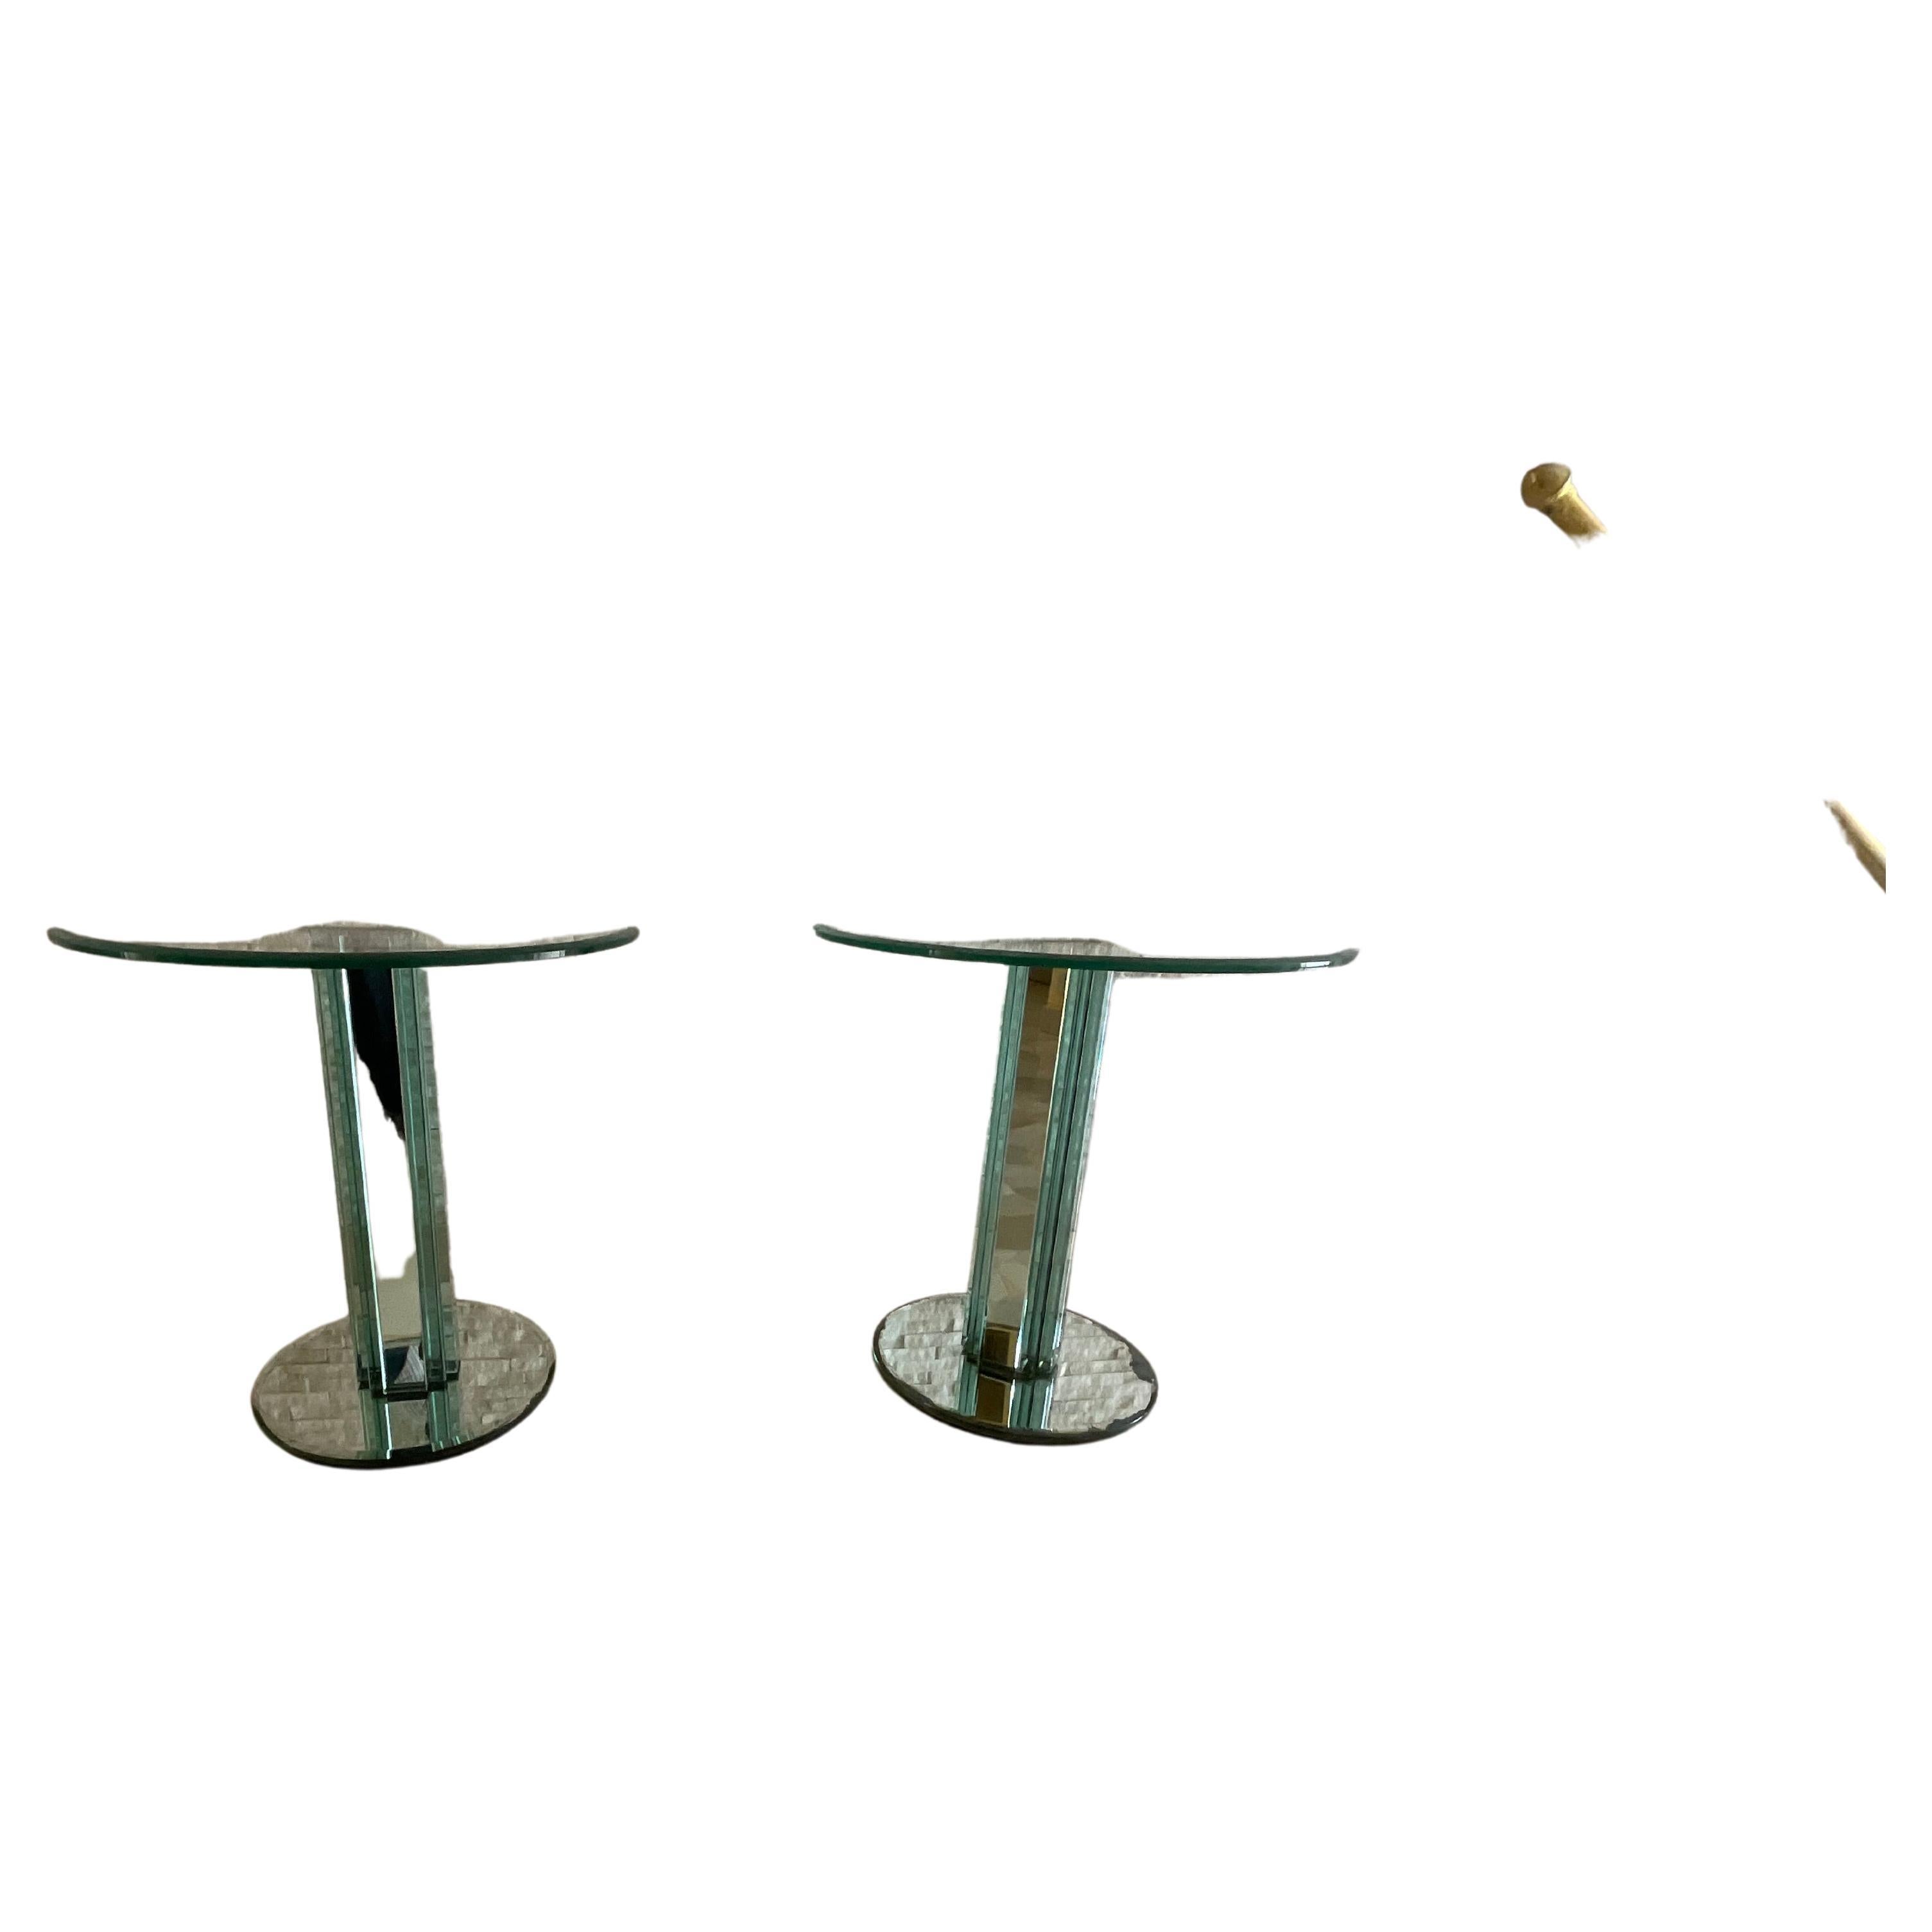 Paire de tables basses en verre épais avec une structure en métal de haute qualité, modèle GOLF, conçues par Luigi Massoni et fabriquées par l'entreprise Gallotti & Radice en 1980.
Des taches d'humidité sont visibles à certains endroits des parties